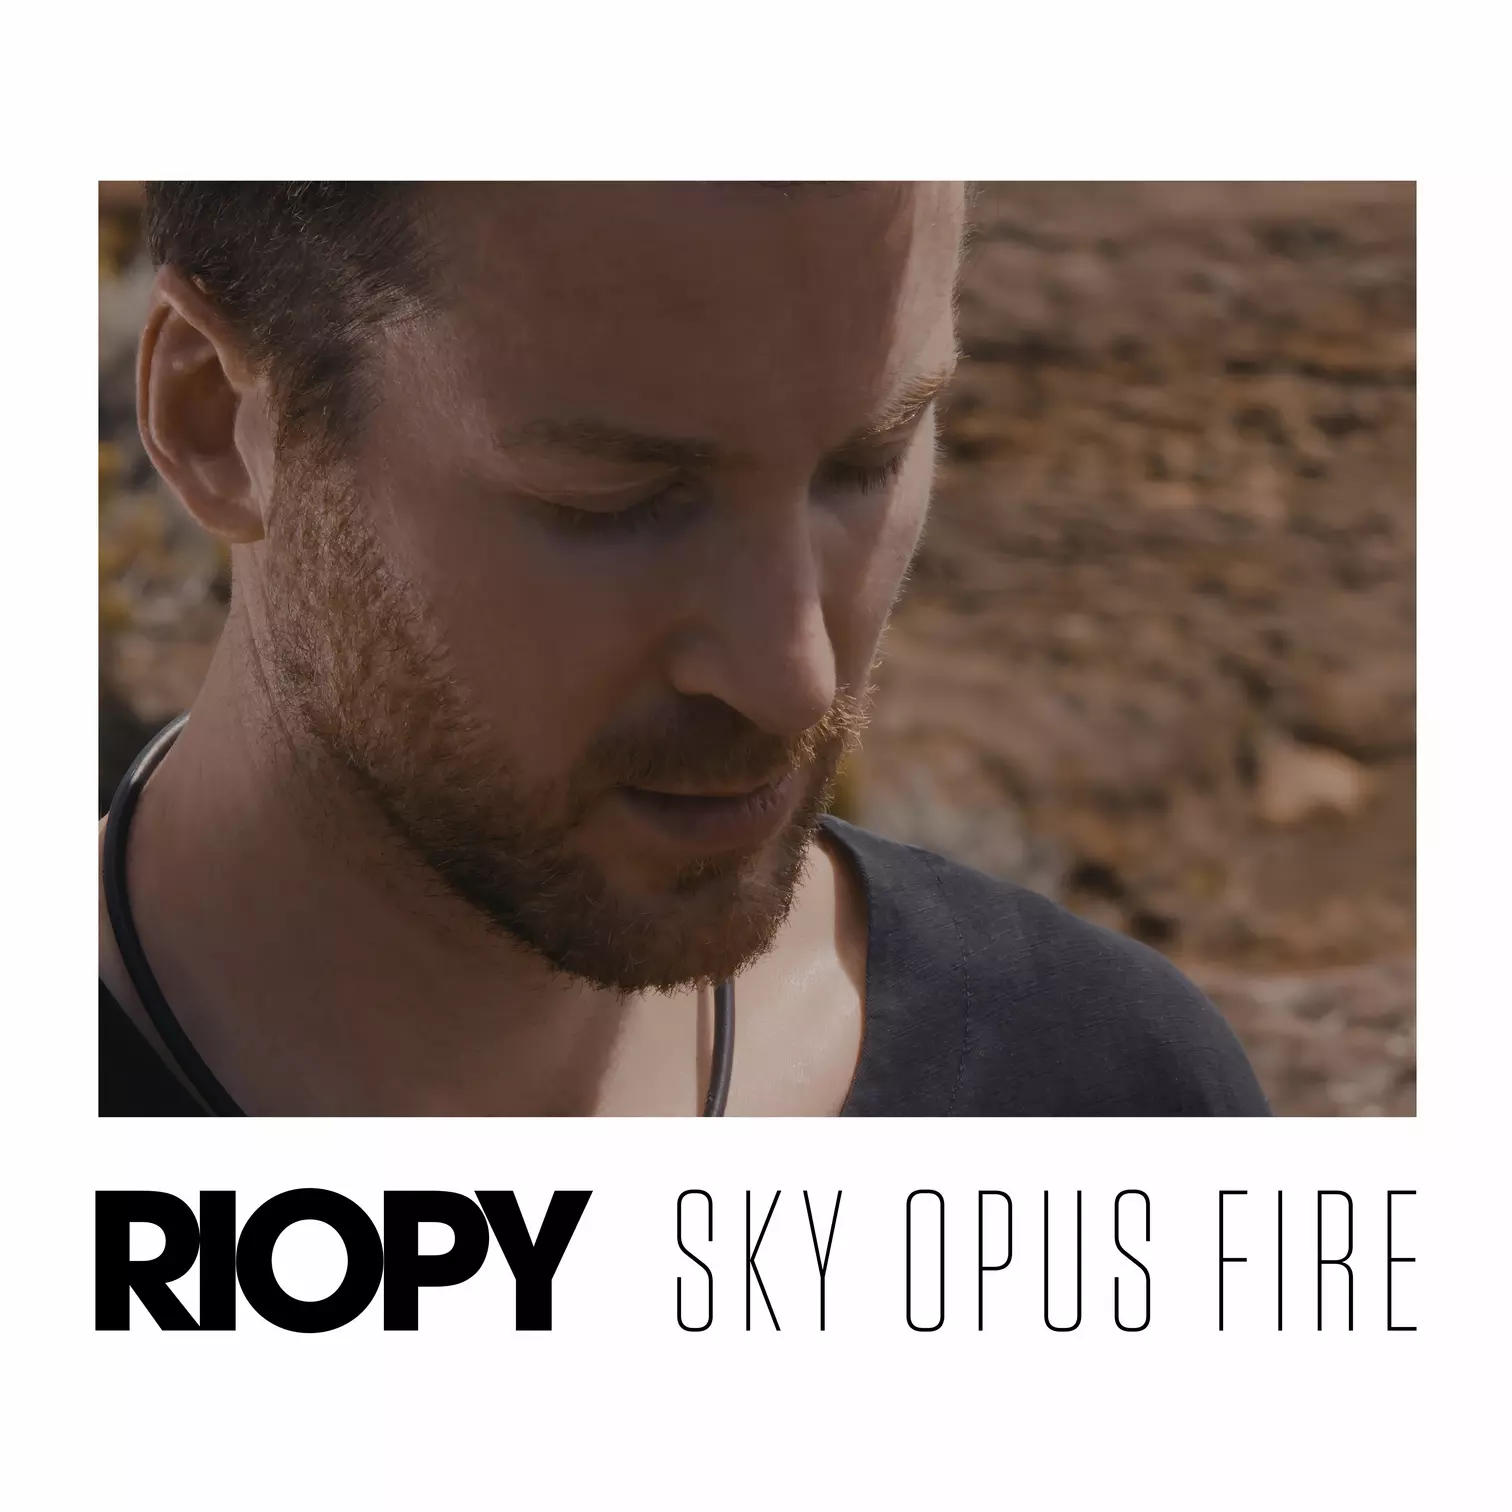 Sky opus fire RIOPY